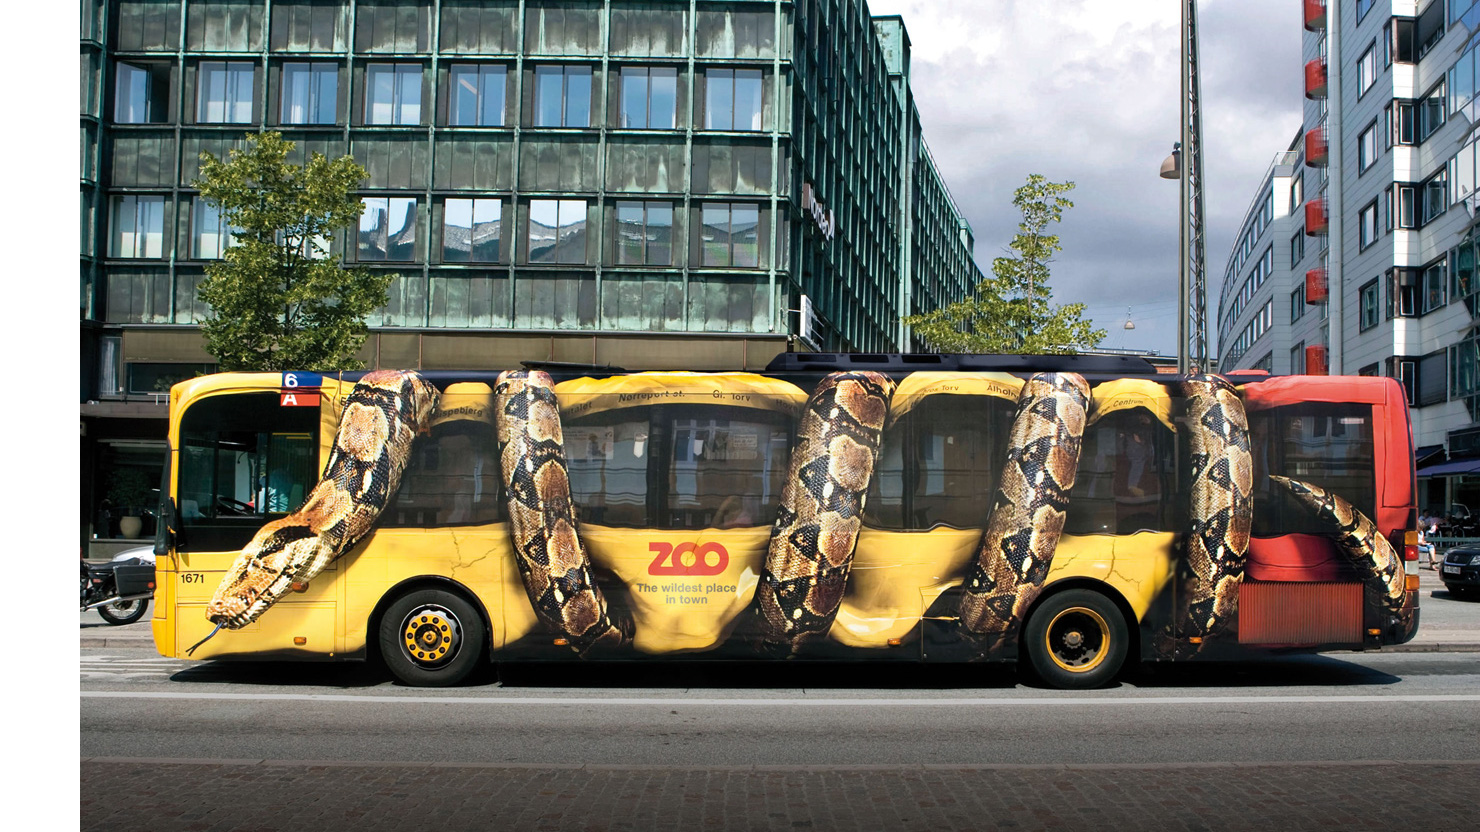 Реклама зоопарка на городском автобусе в Копенгагене.